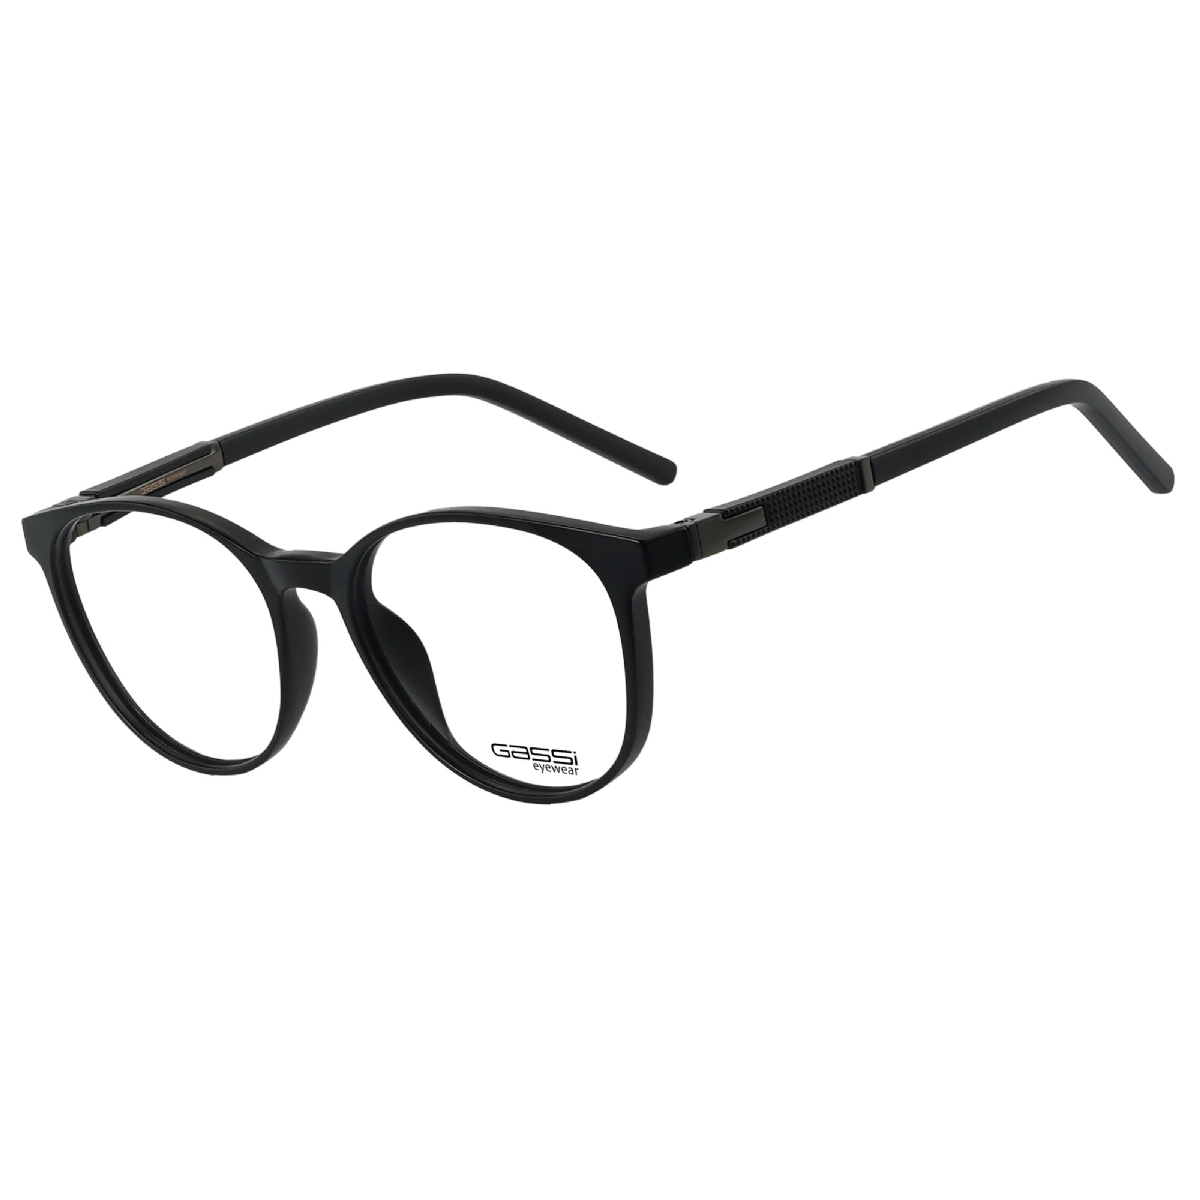 Óculos de grau Gassi Endrew - Preto